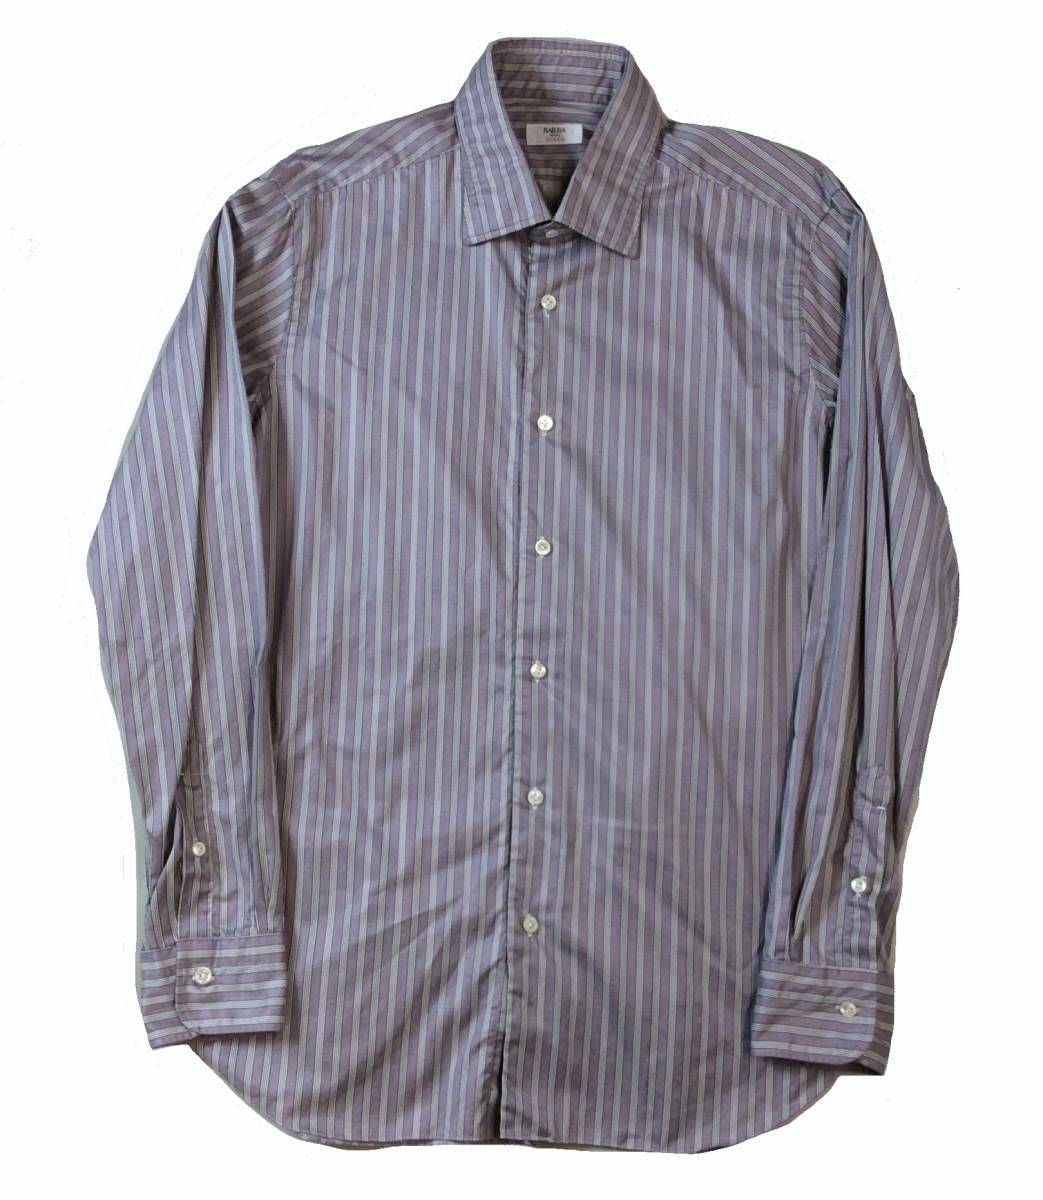 BARBA CULTO バルバ クルト ドレスシャツ 長袖シャツ ITALY製 パープル グレー/ホワイトストライプ メンズ 42 161/2 送料250円